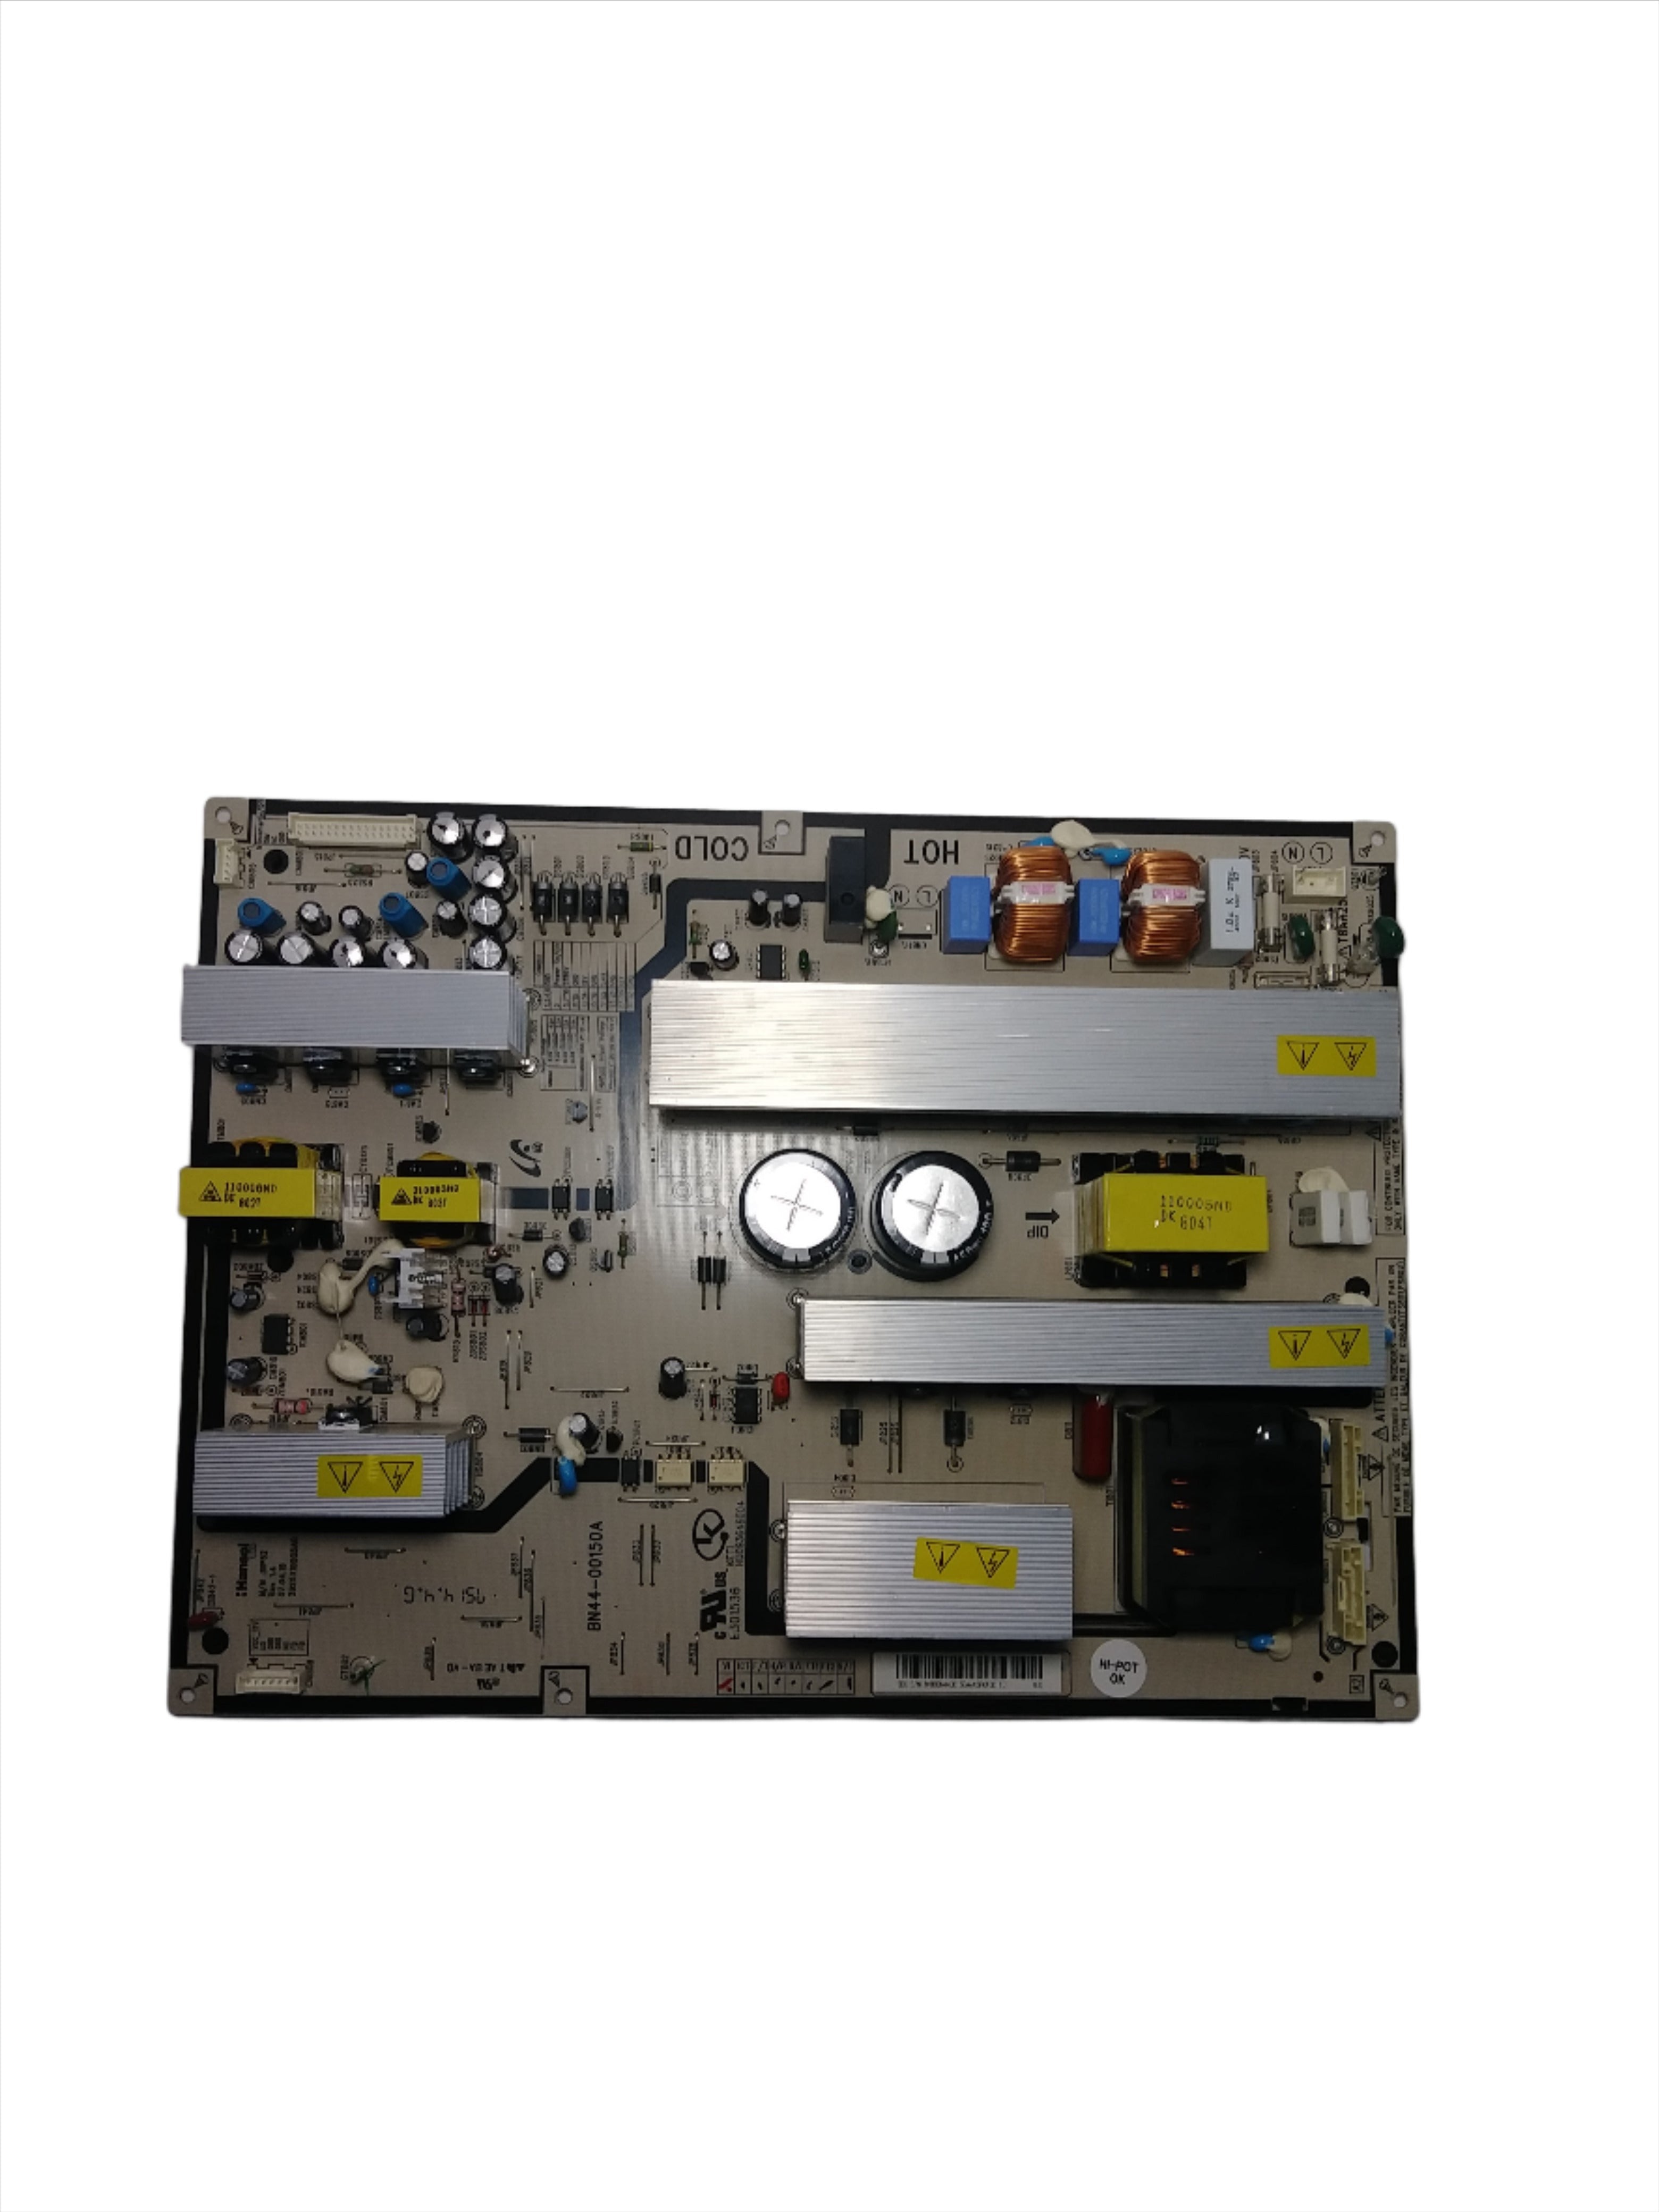 Samsung BN44-00150A (SIP52) Power Supply / Backlight Inverter